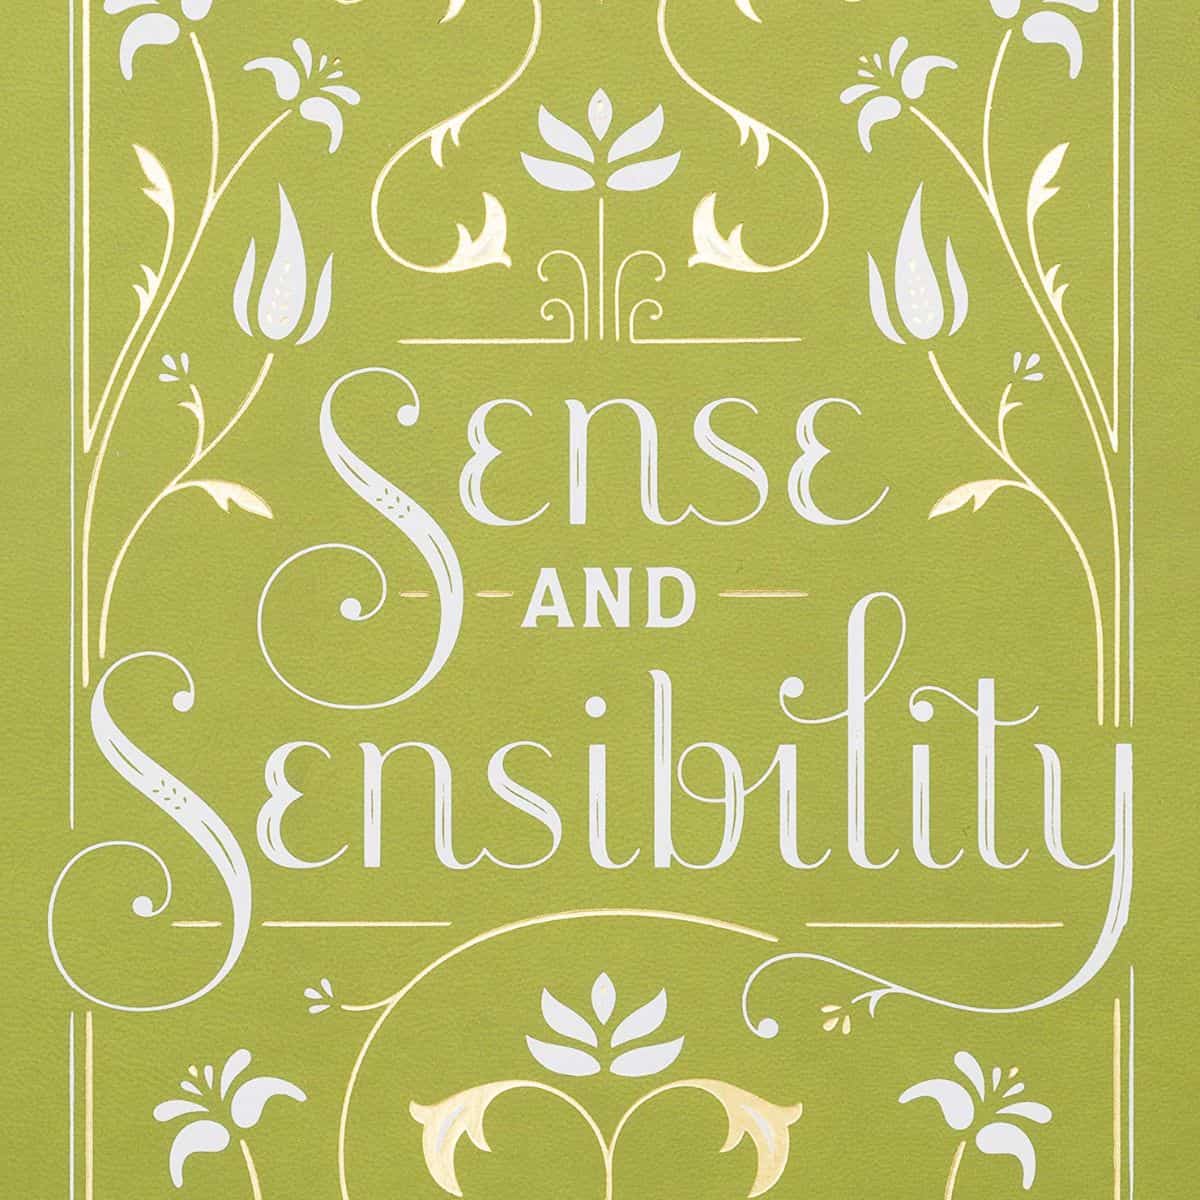 sense and sensibility